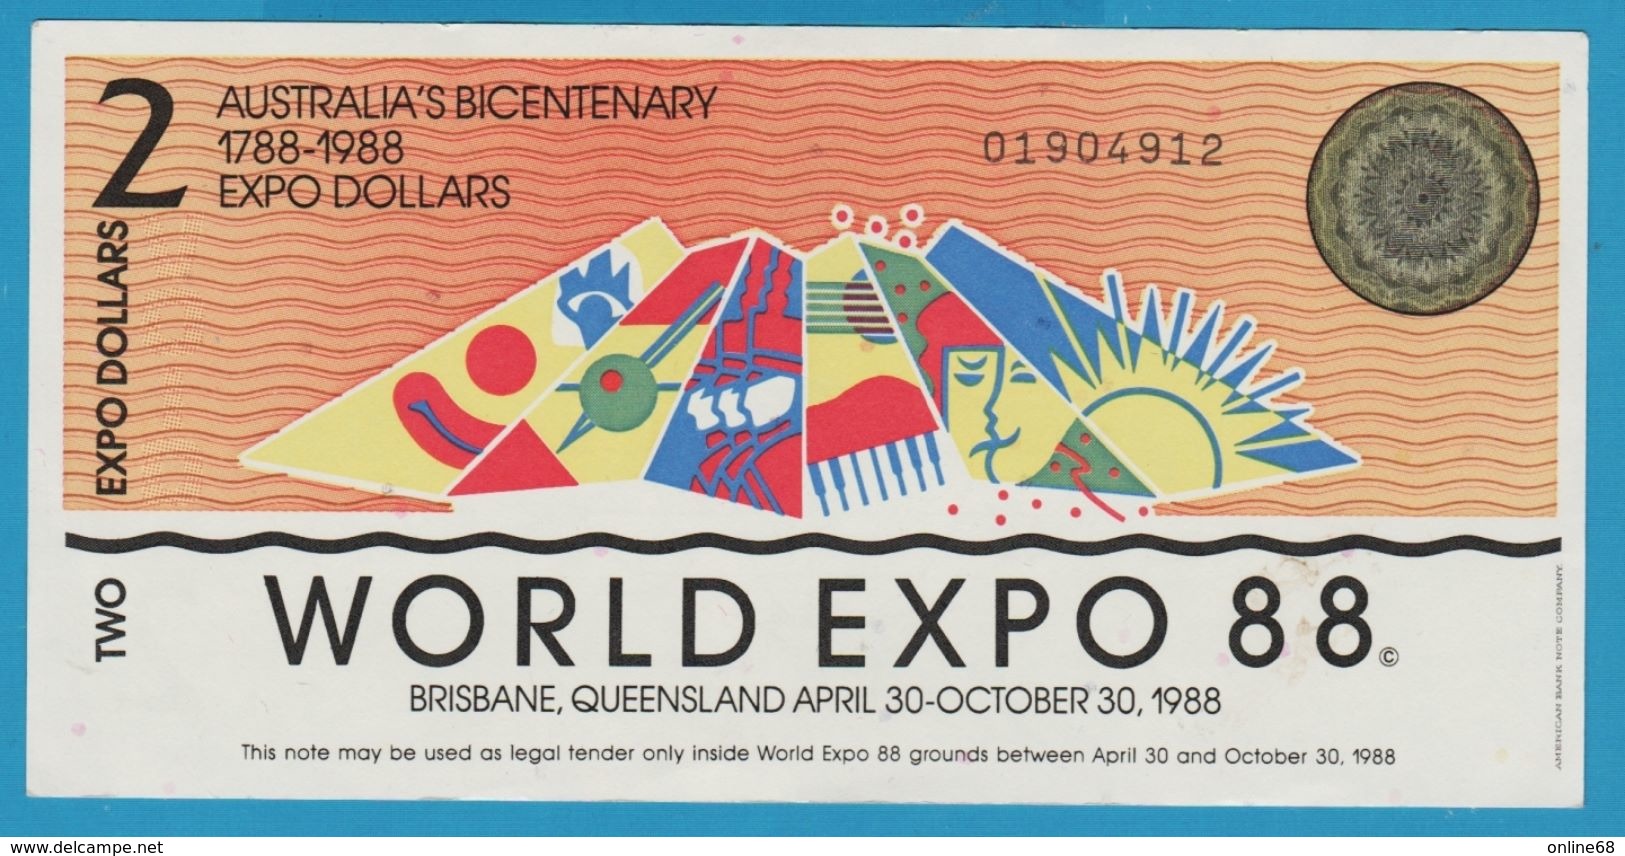 AUSTRALIA 2 EXPO DOLLARS 1788-1988 WORLD EXPO 88 No 01904912 - Fakes & Specimens